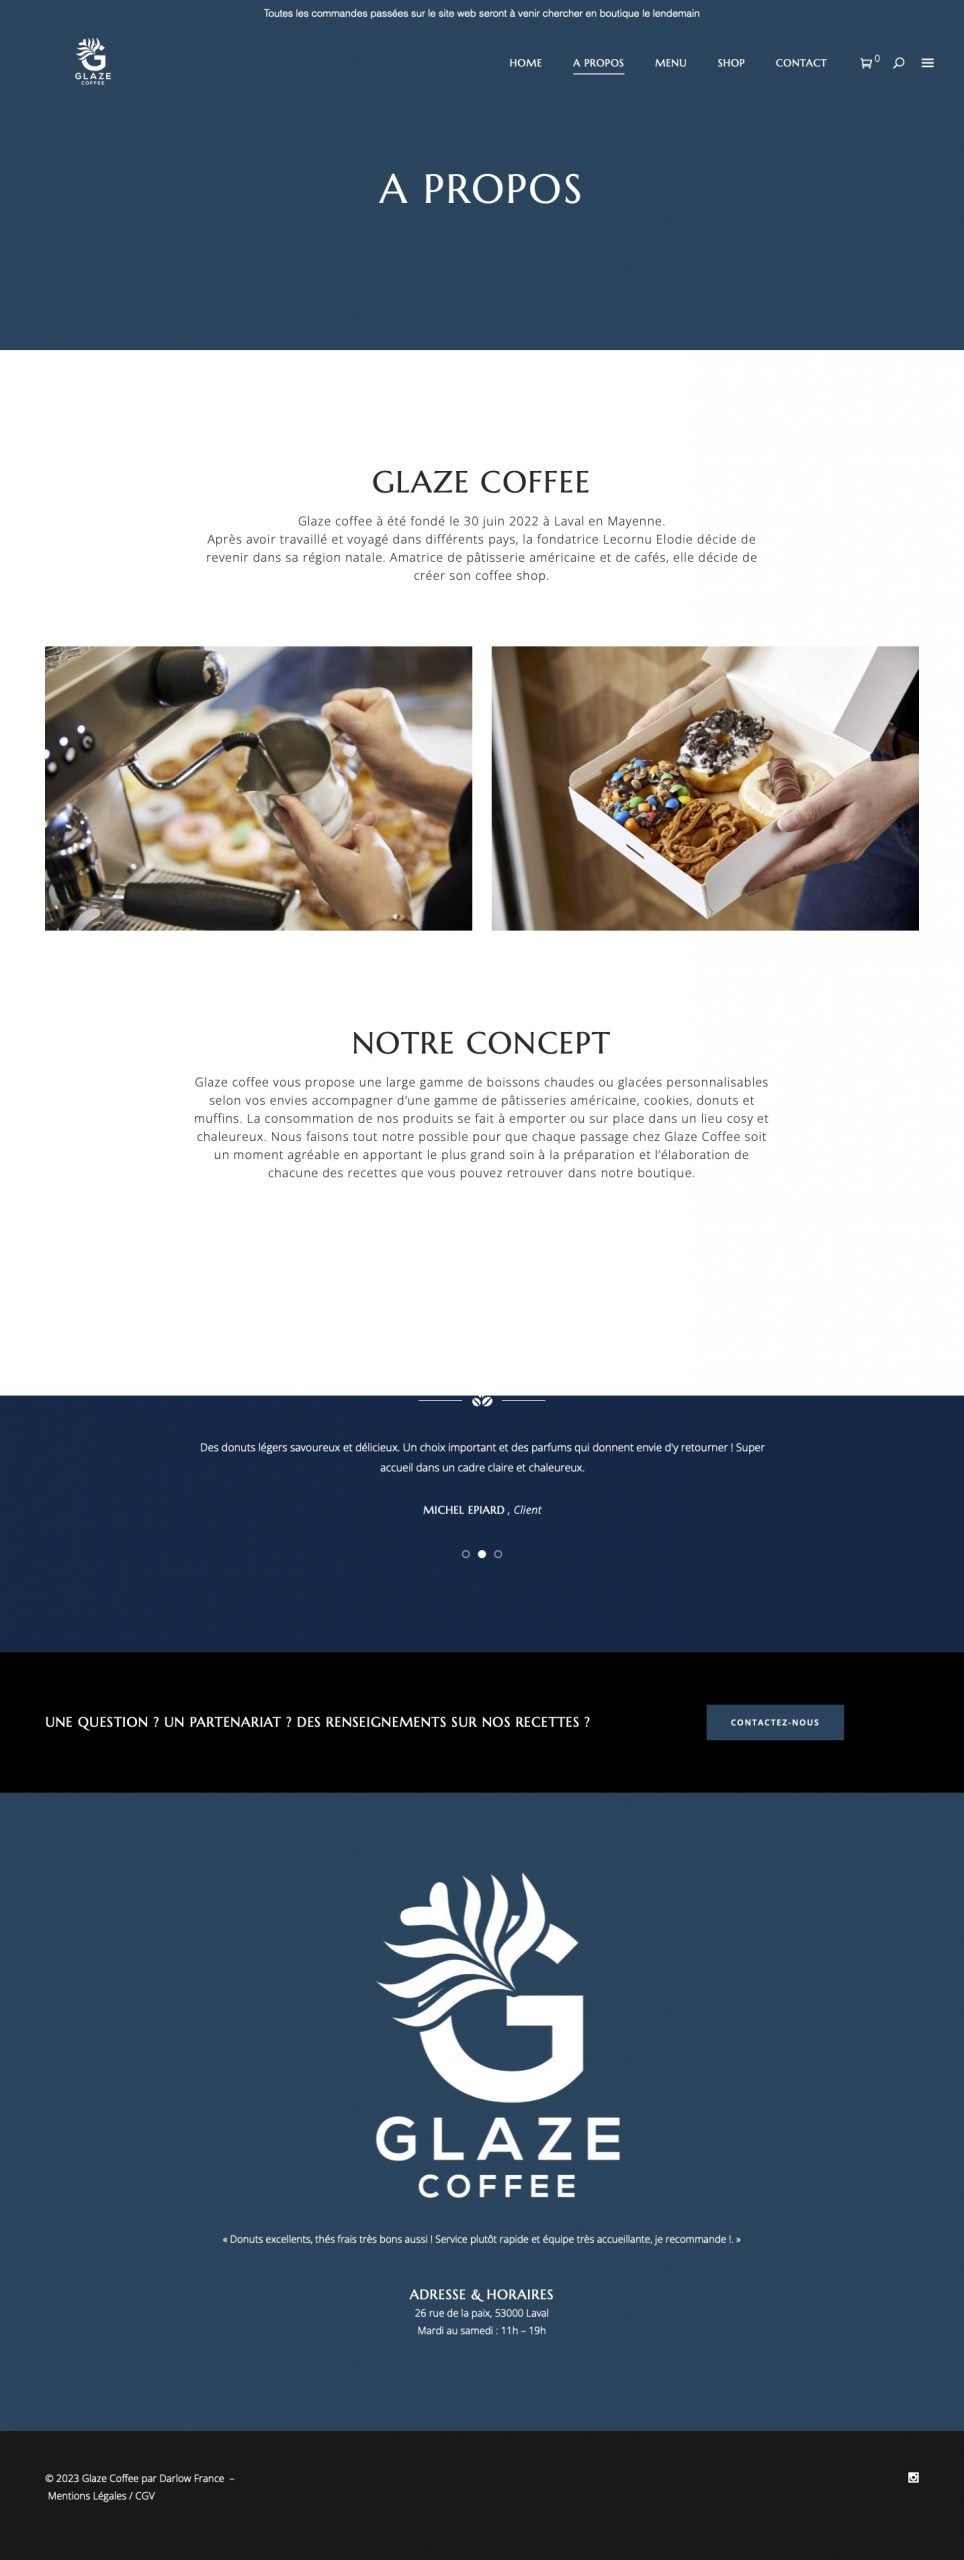 A propos - Glaze Coffee - Site ecommerce Wordpress - Darlow France